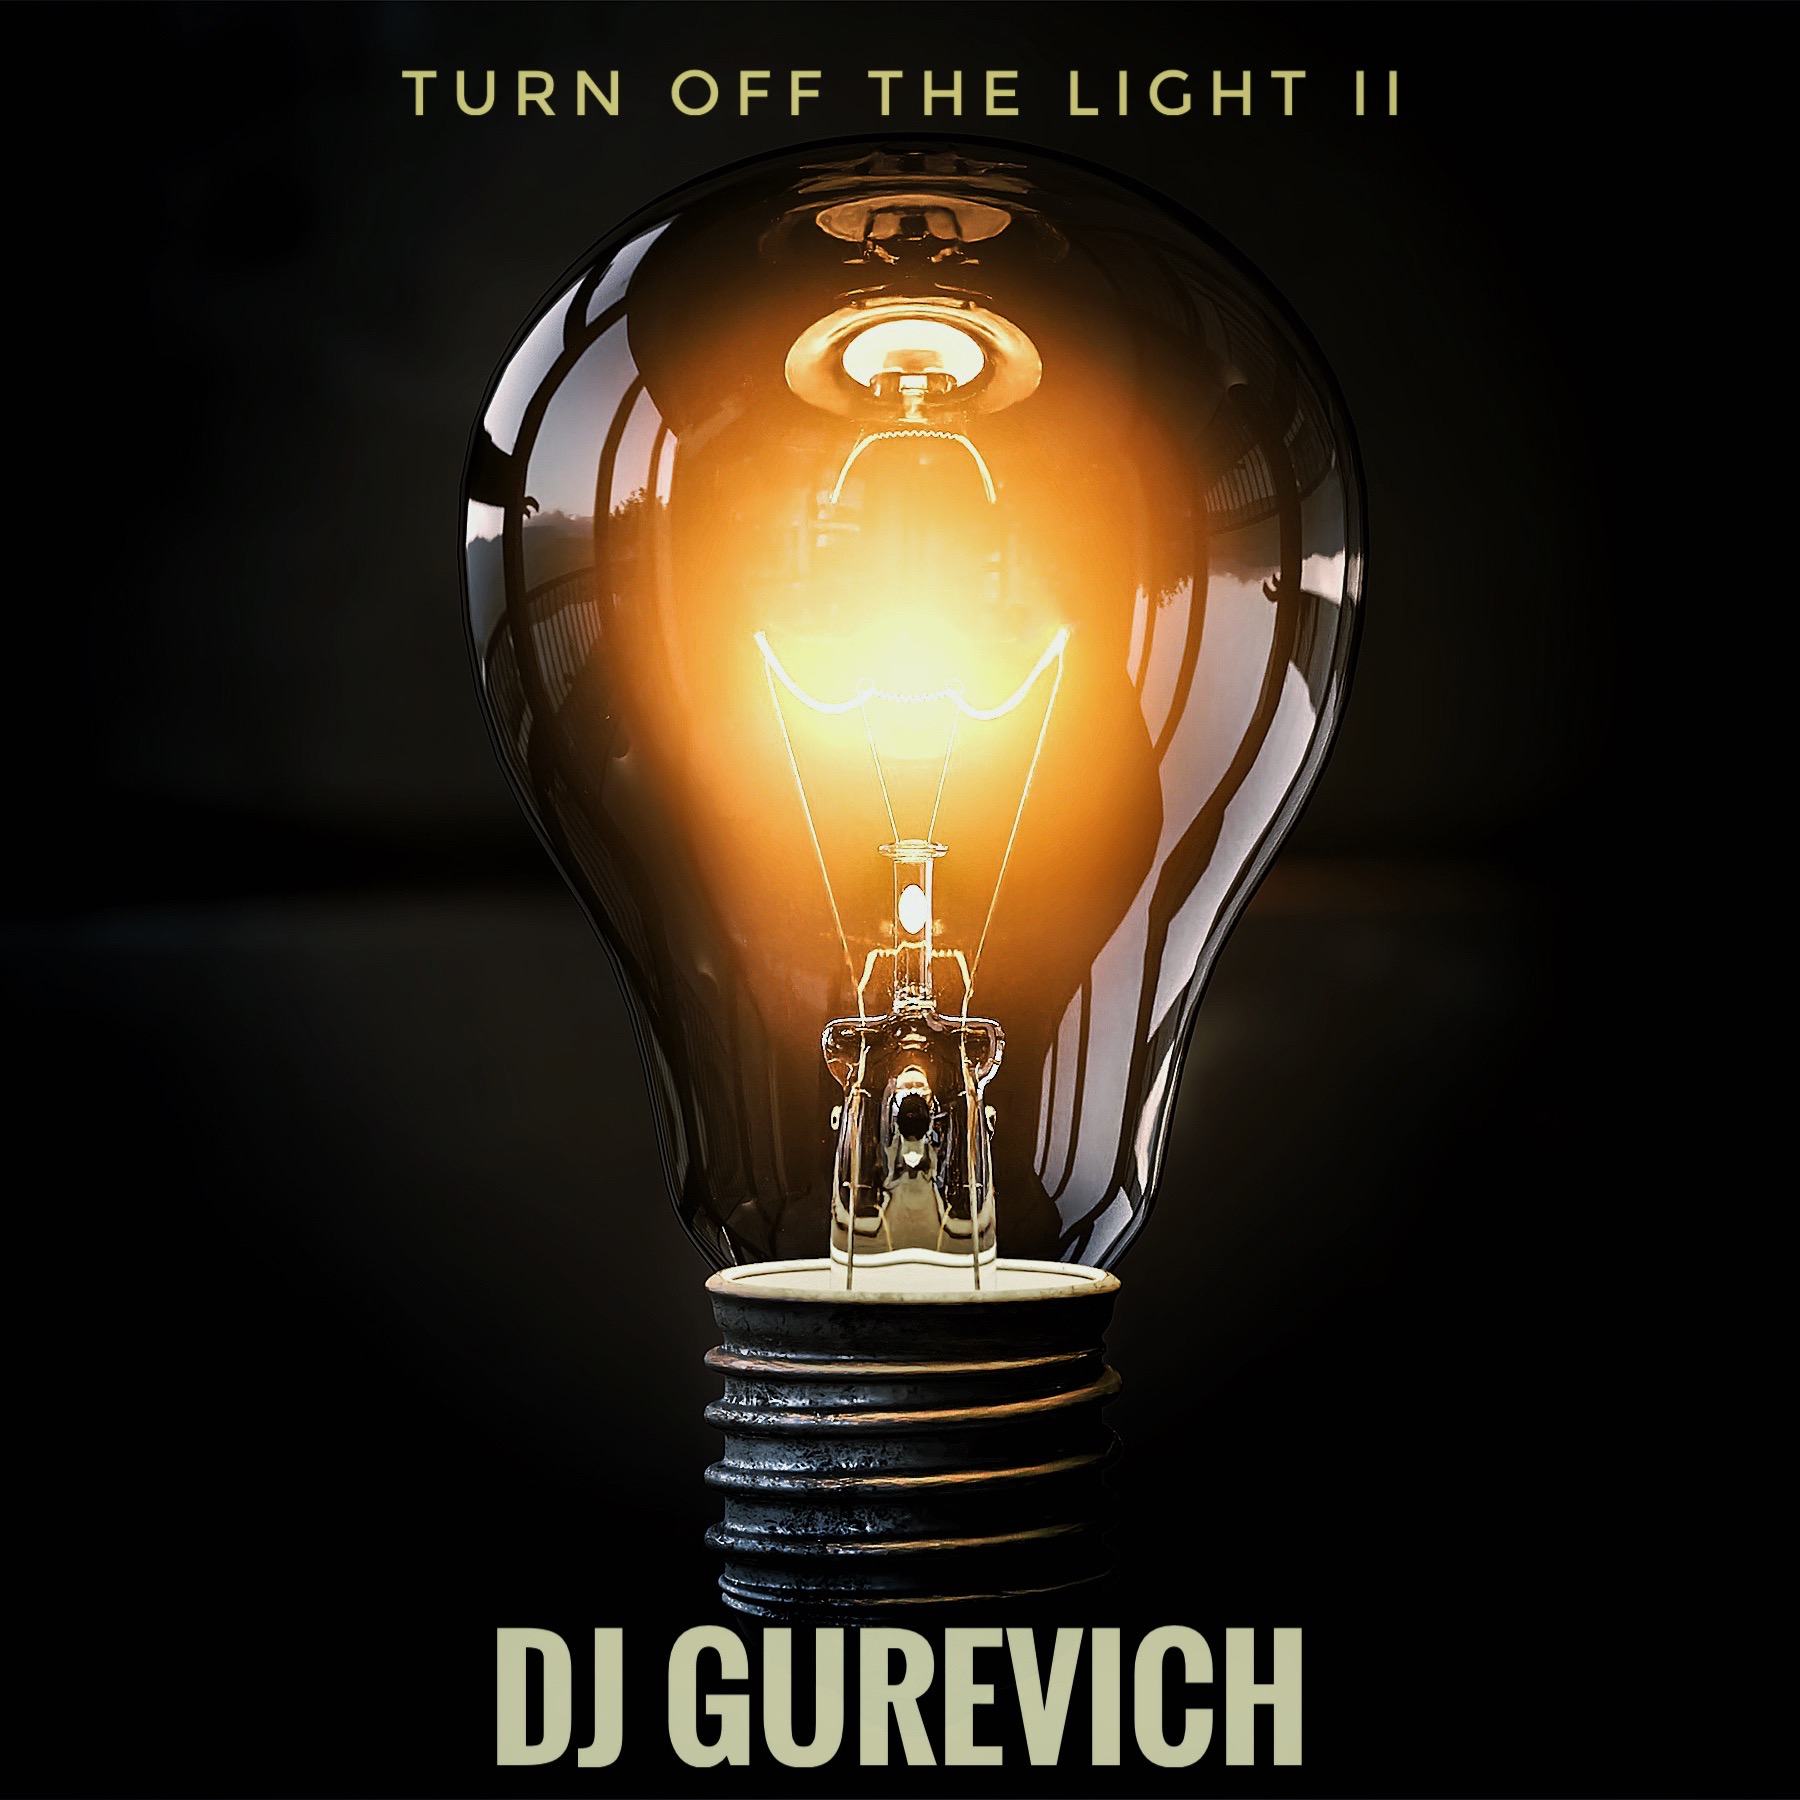 Preuzimanje datoteka Dj Gurevich - Turn off light II